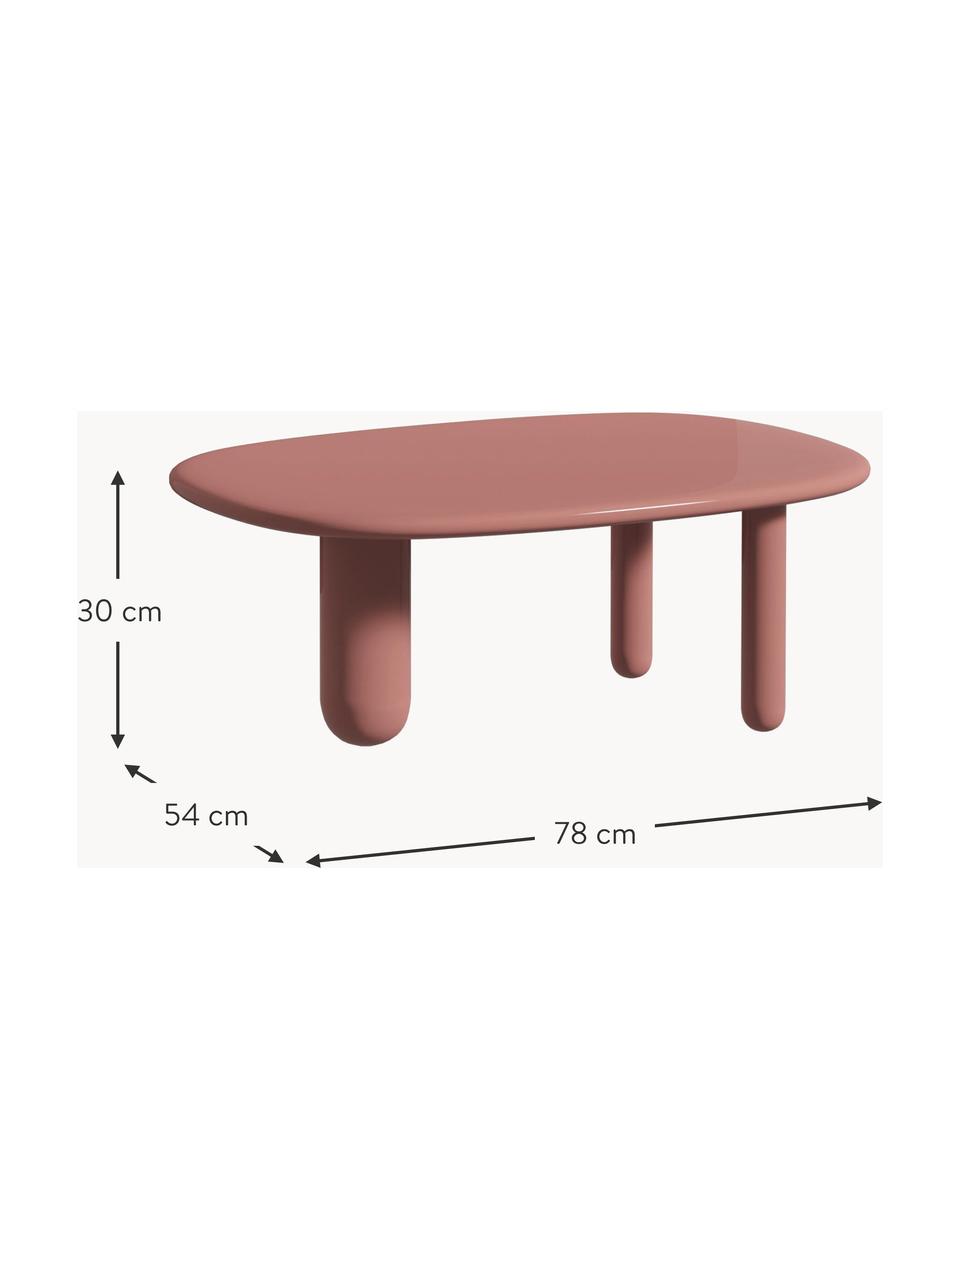 Oválný konferenční stolek Tottori, Lakovaná dřevovláknitá deska střední hustoty (MDF), Dřevo, lakované starorůžovou barvou, Š 78 cm, H 54 cm